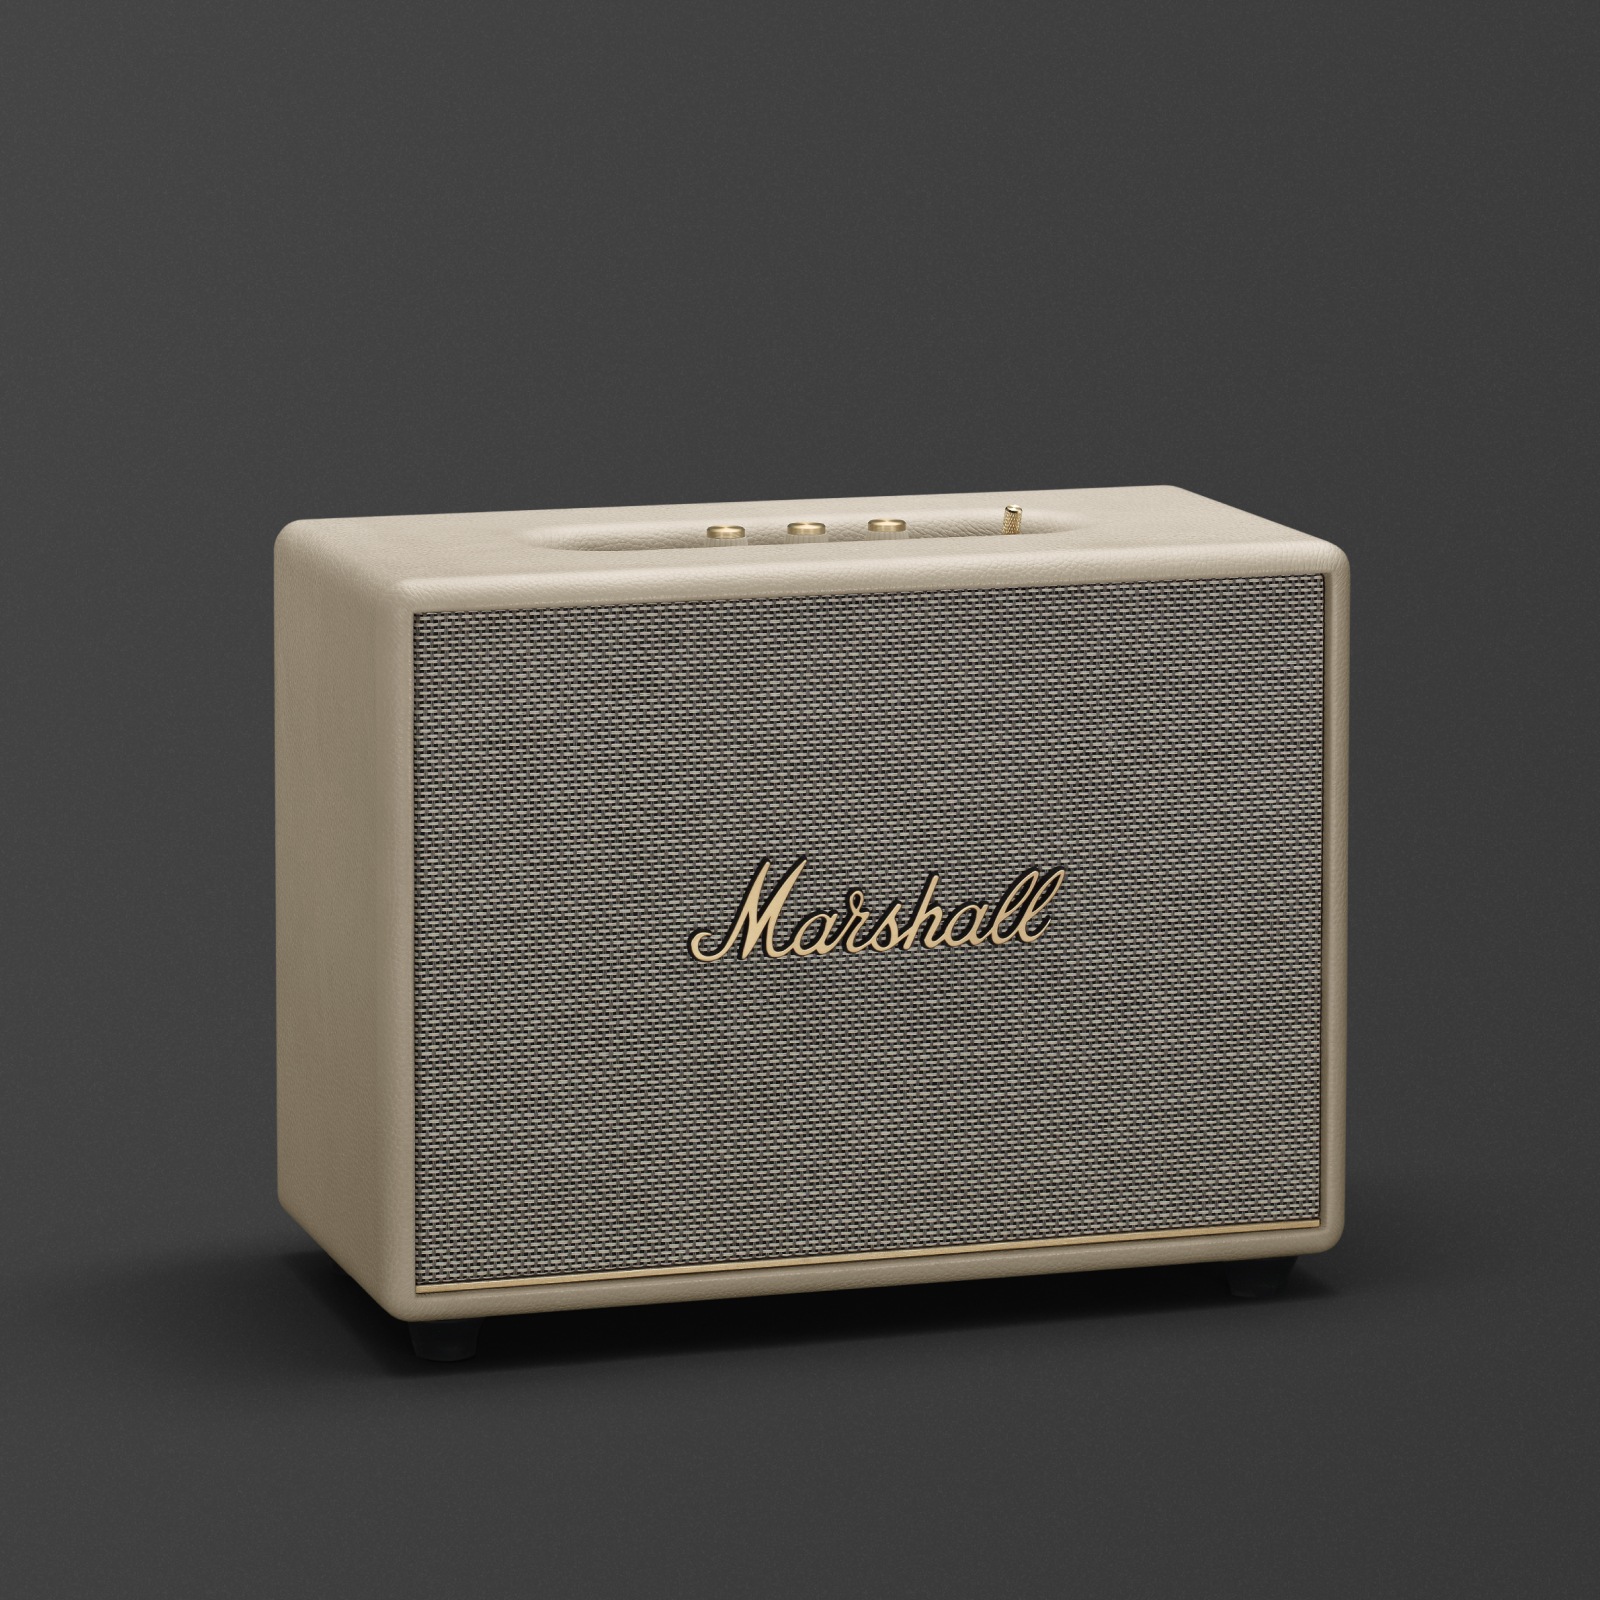 Altavoz Bluetooth Marshall Woburn III Cream. Este altavoz Marshall para el hogar, también disponible en blanco, es el modelo Woburn III Cream.